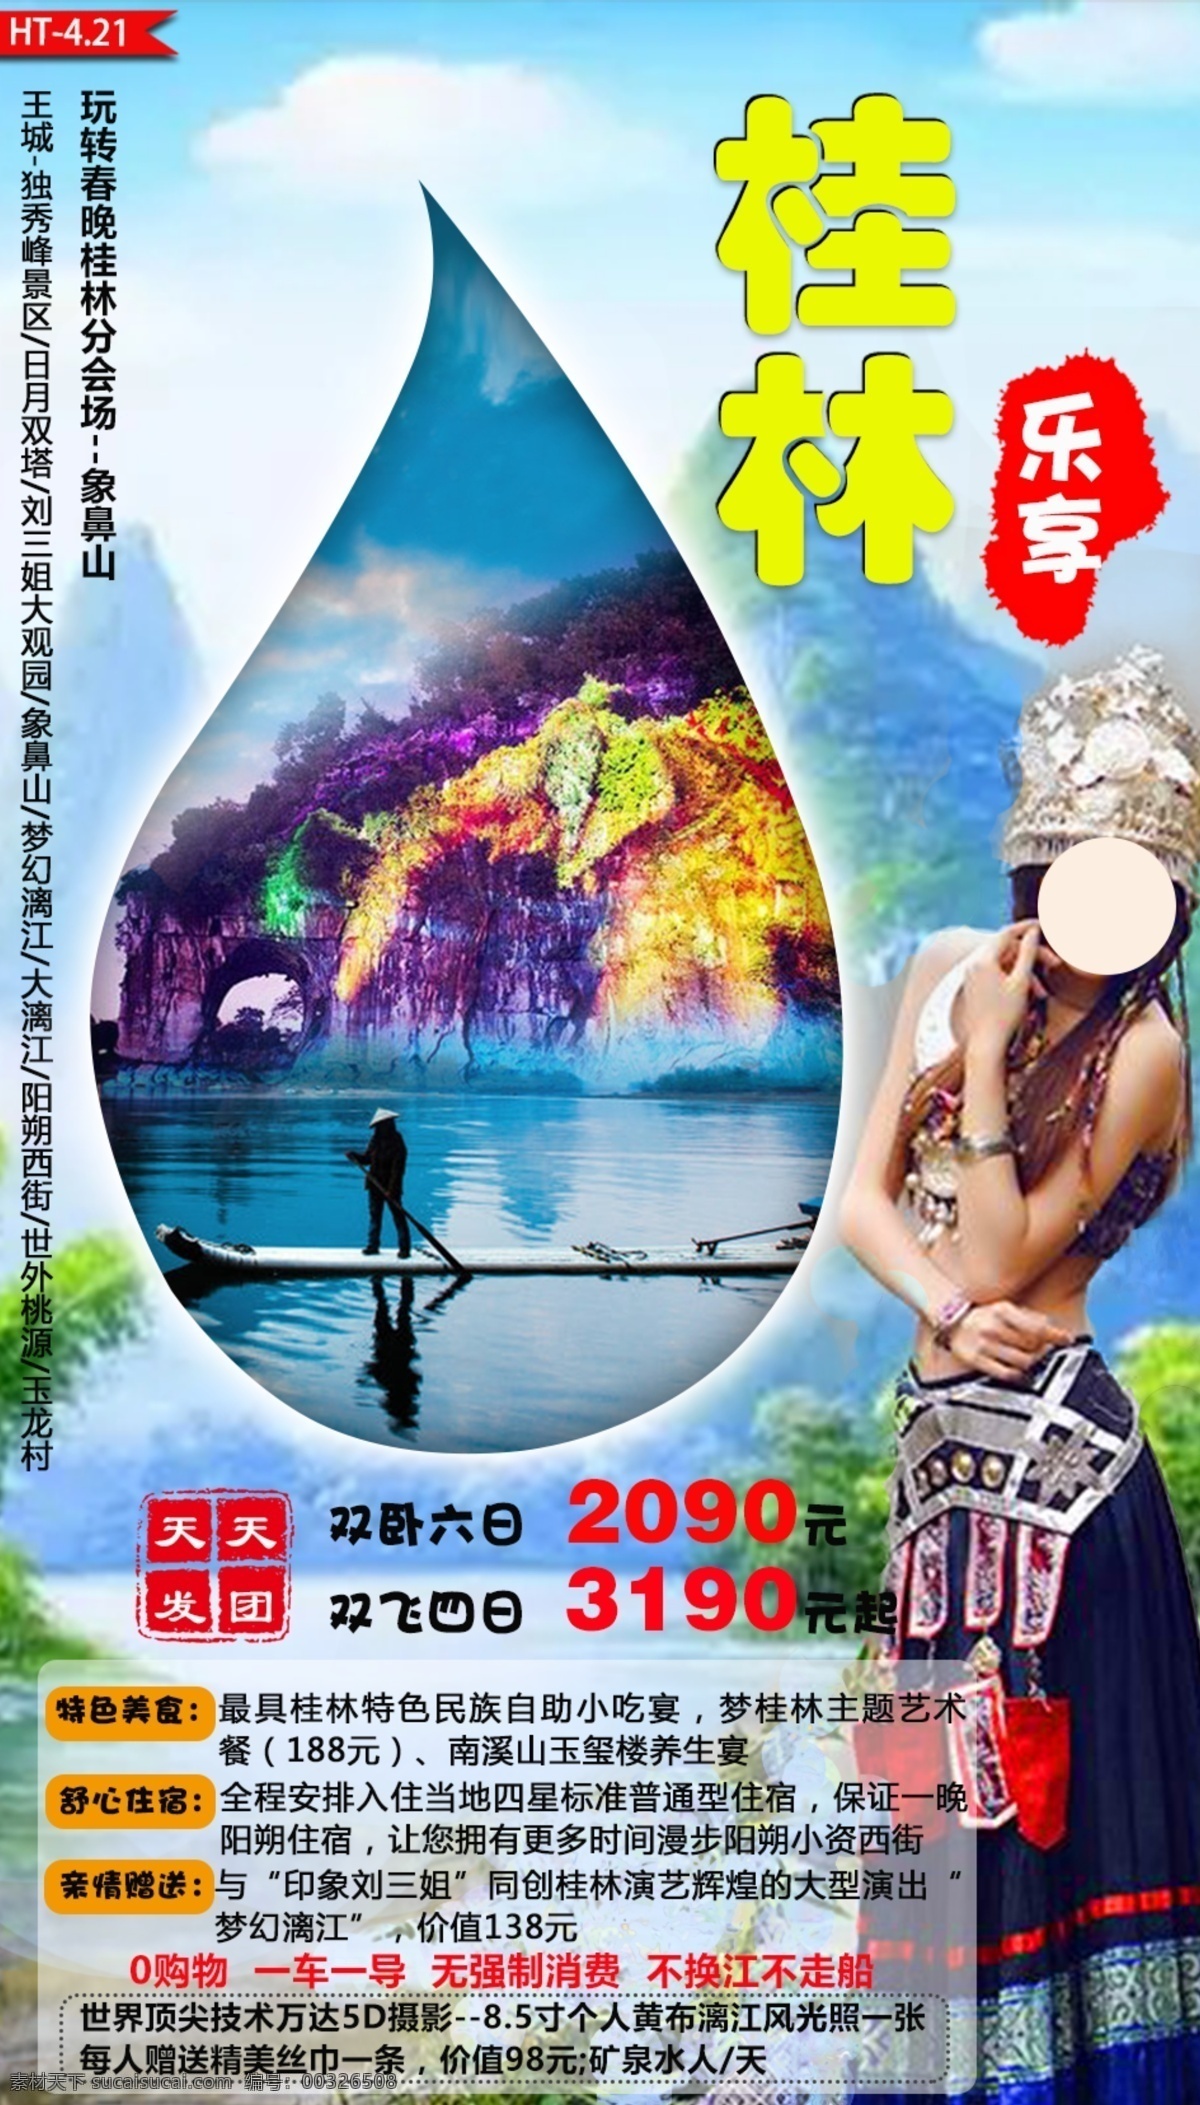 乐 享 桂林 节日 旅游 宣传海报 乐享 天天开团 双飞 双卧